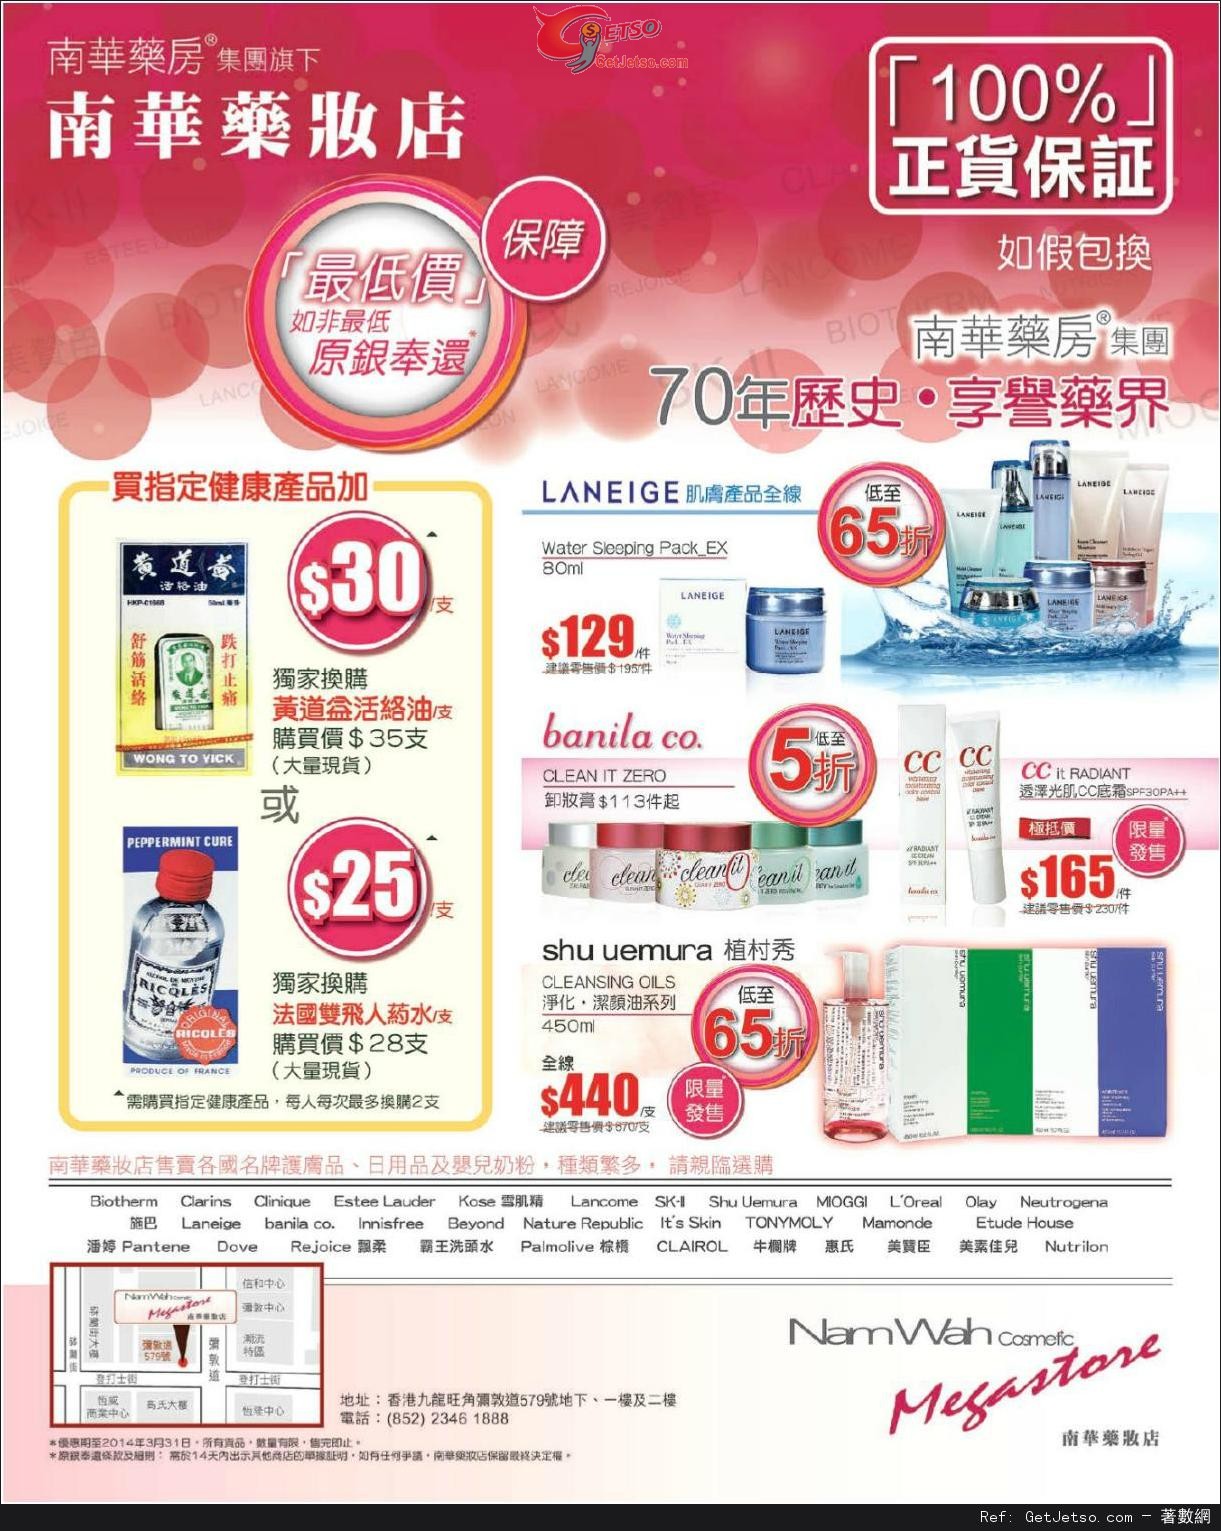 南華藥妝店護膚產品購買優惠(至14年3月31日)圖片1